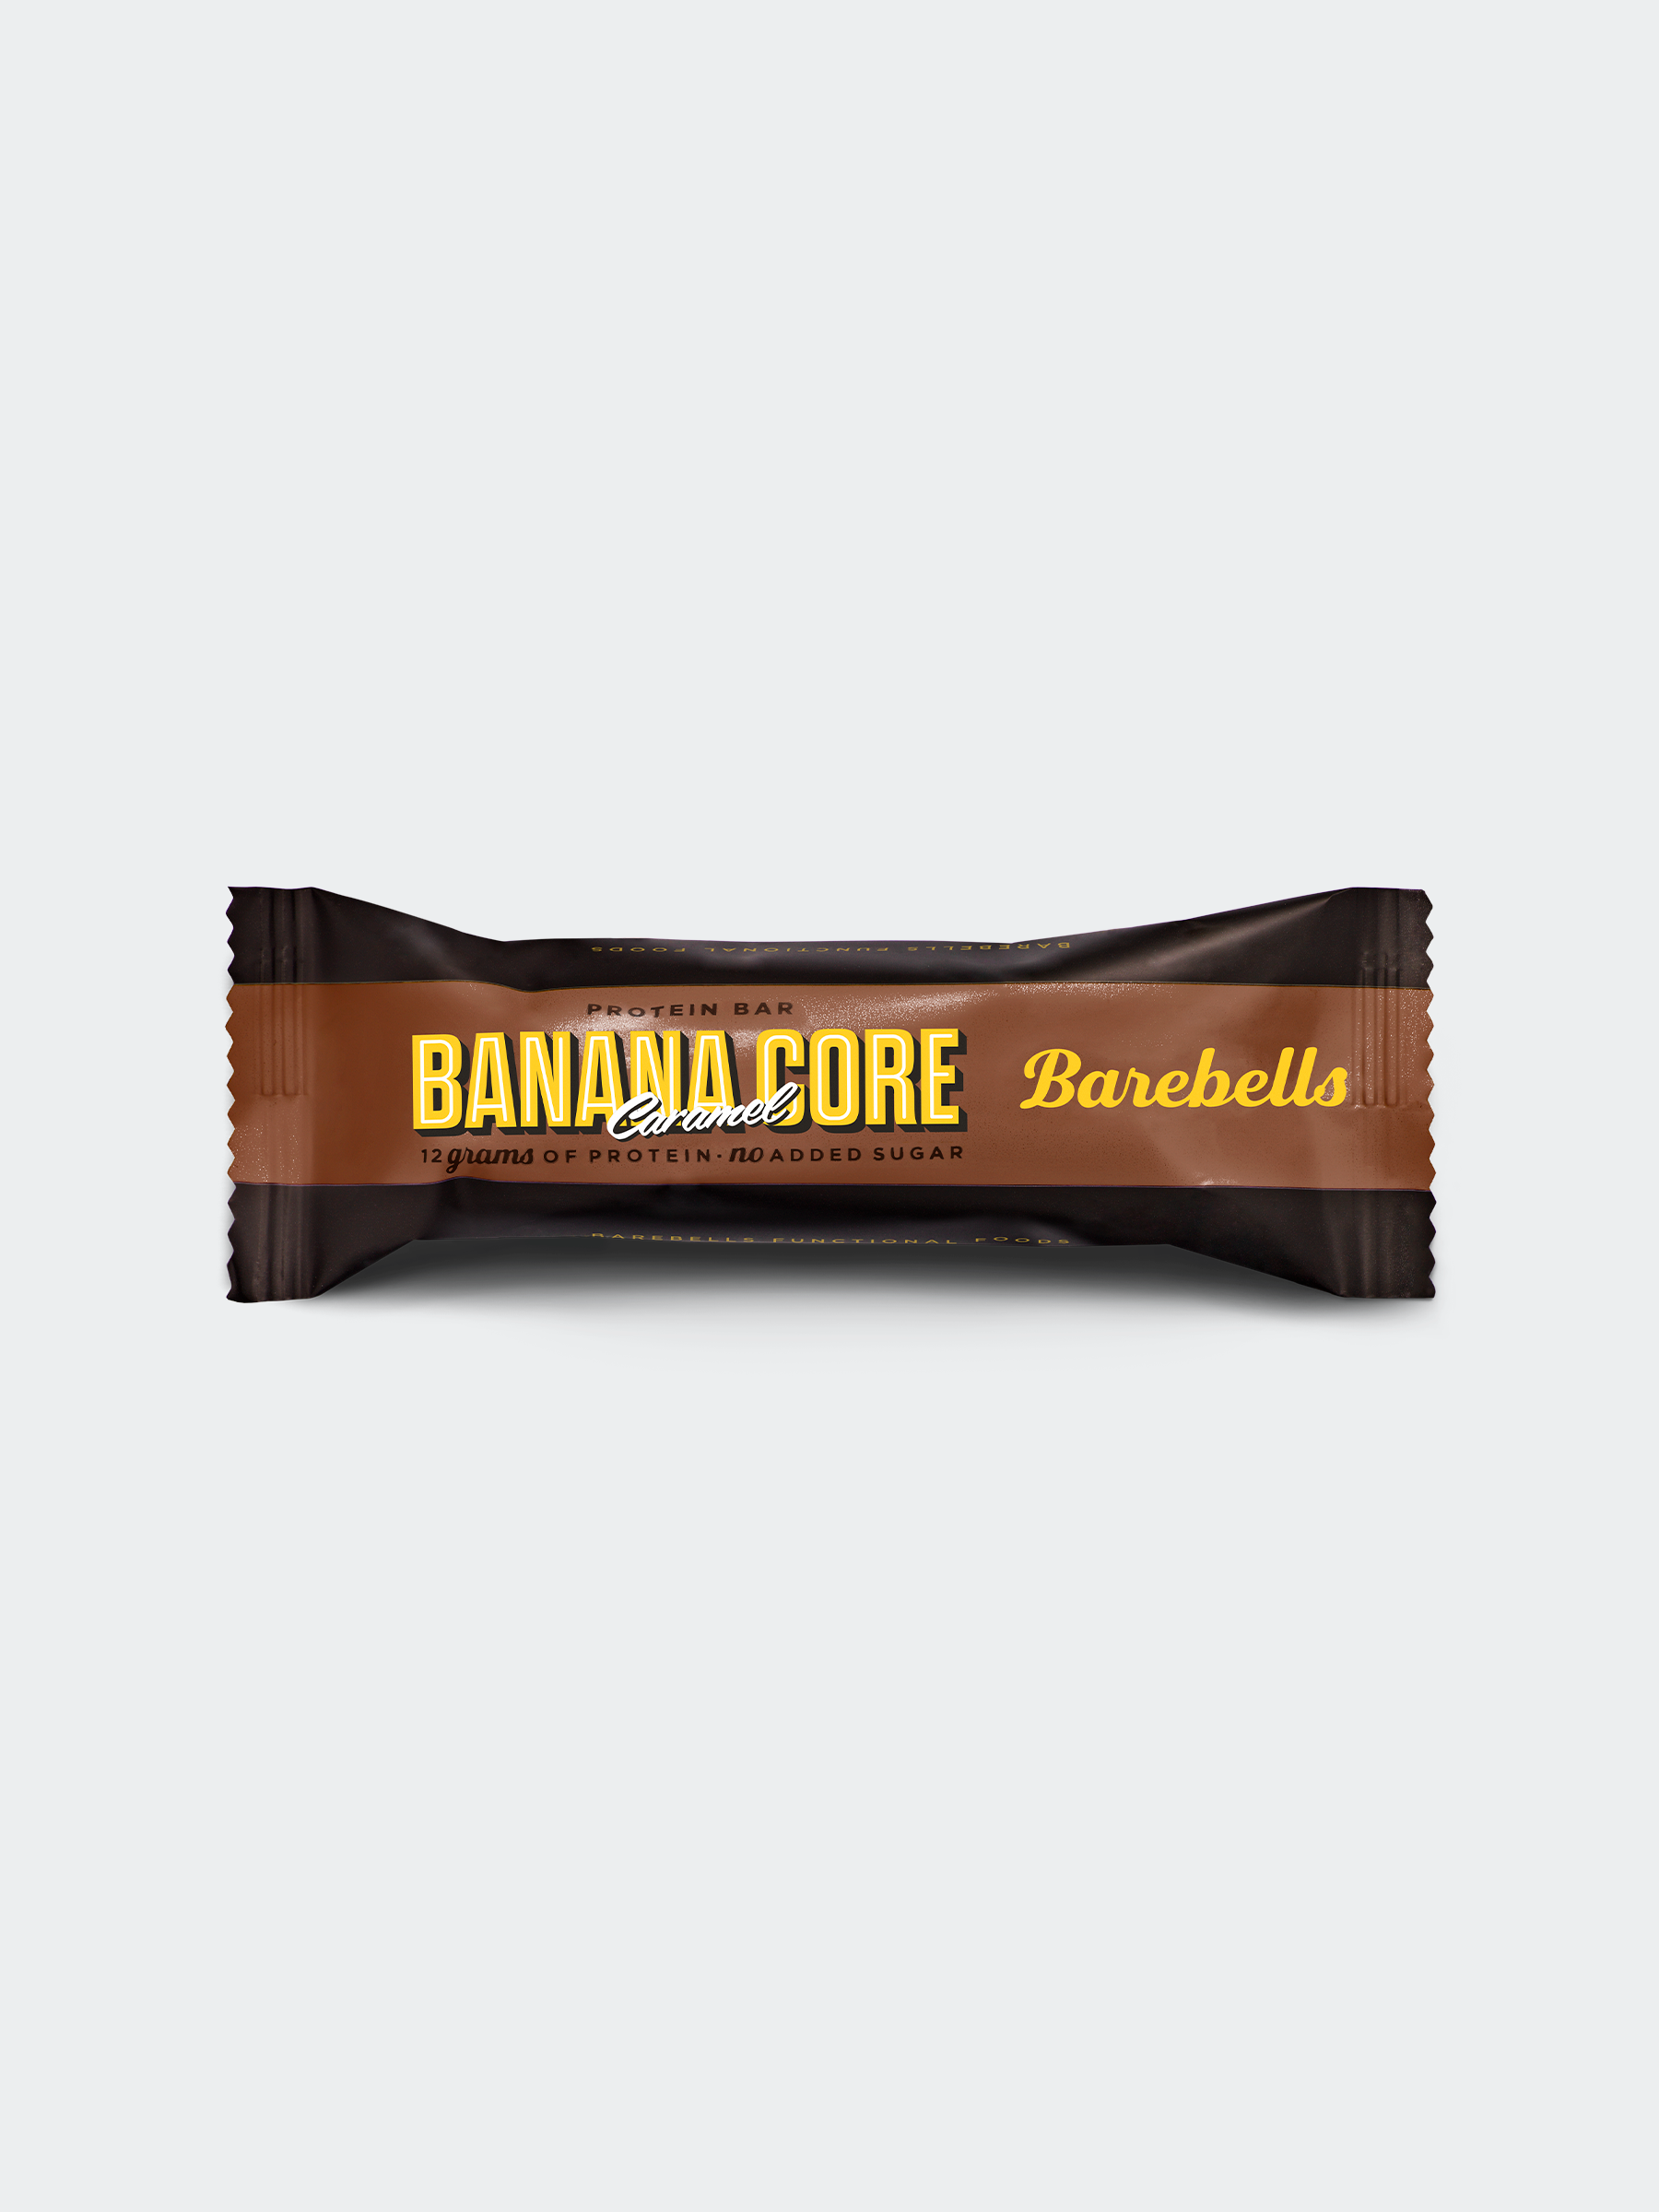 Barebells Core Bar Banana Caramel 35g